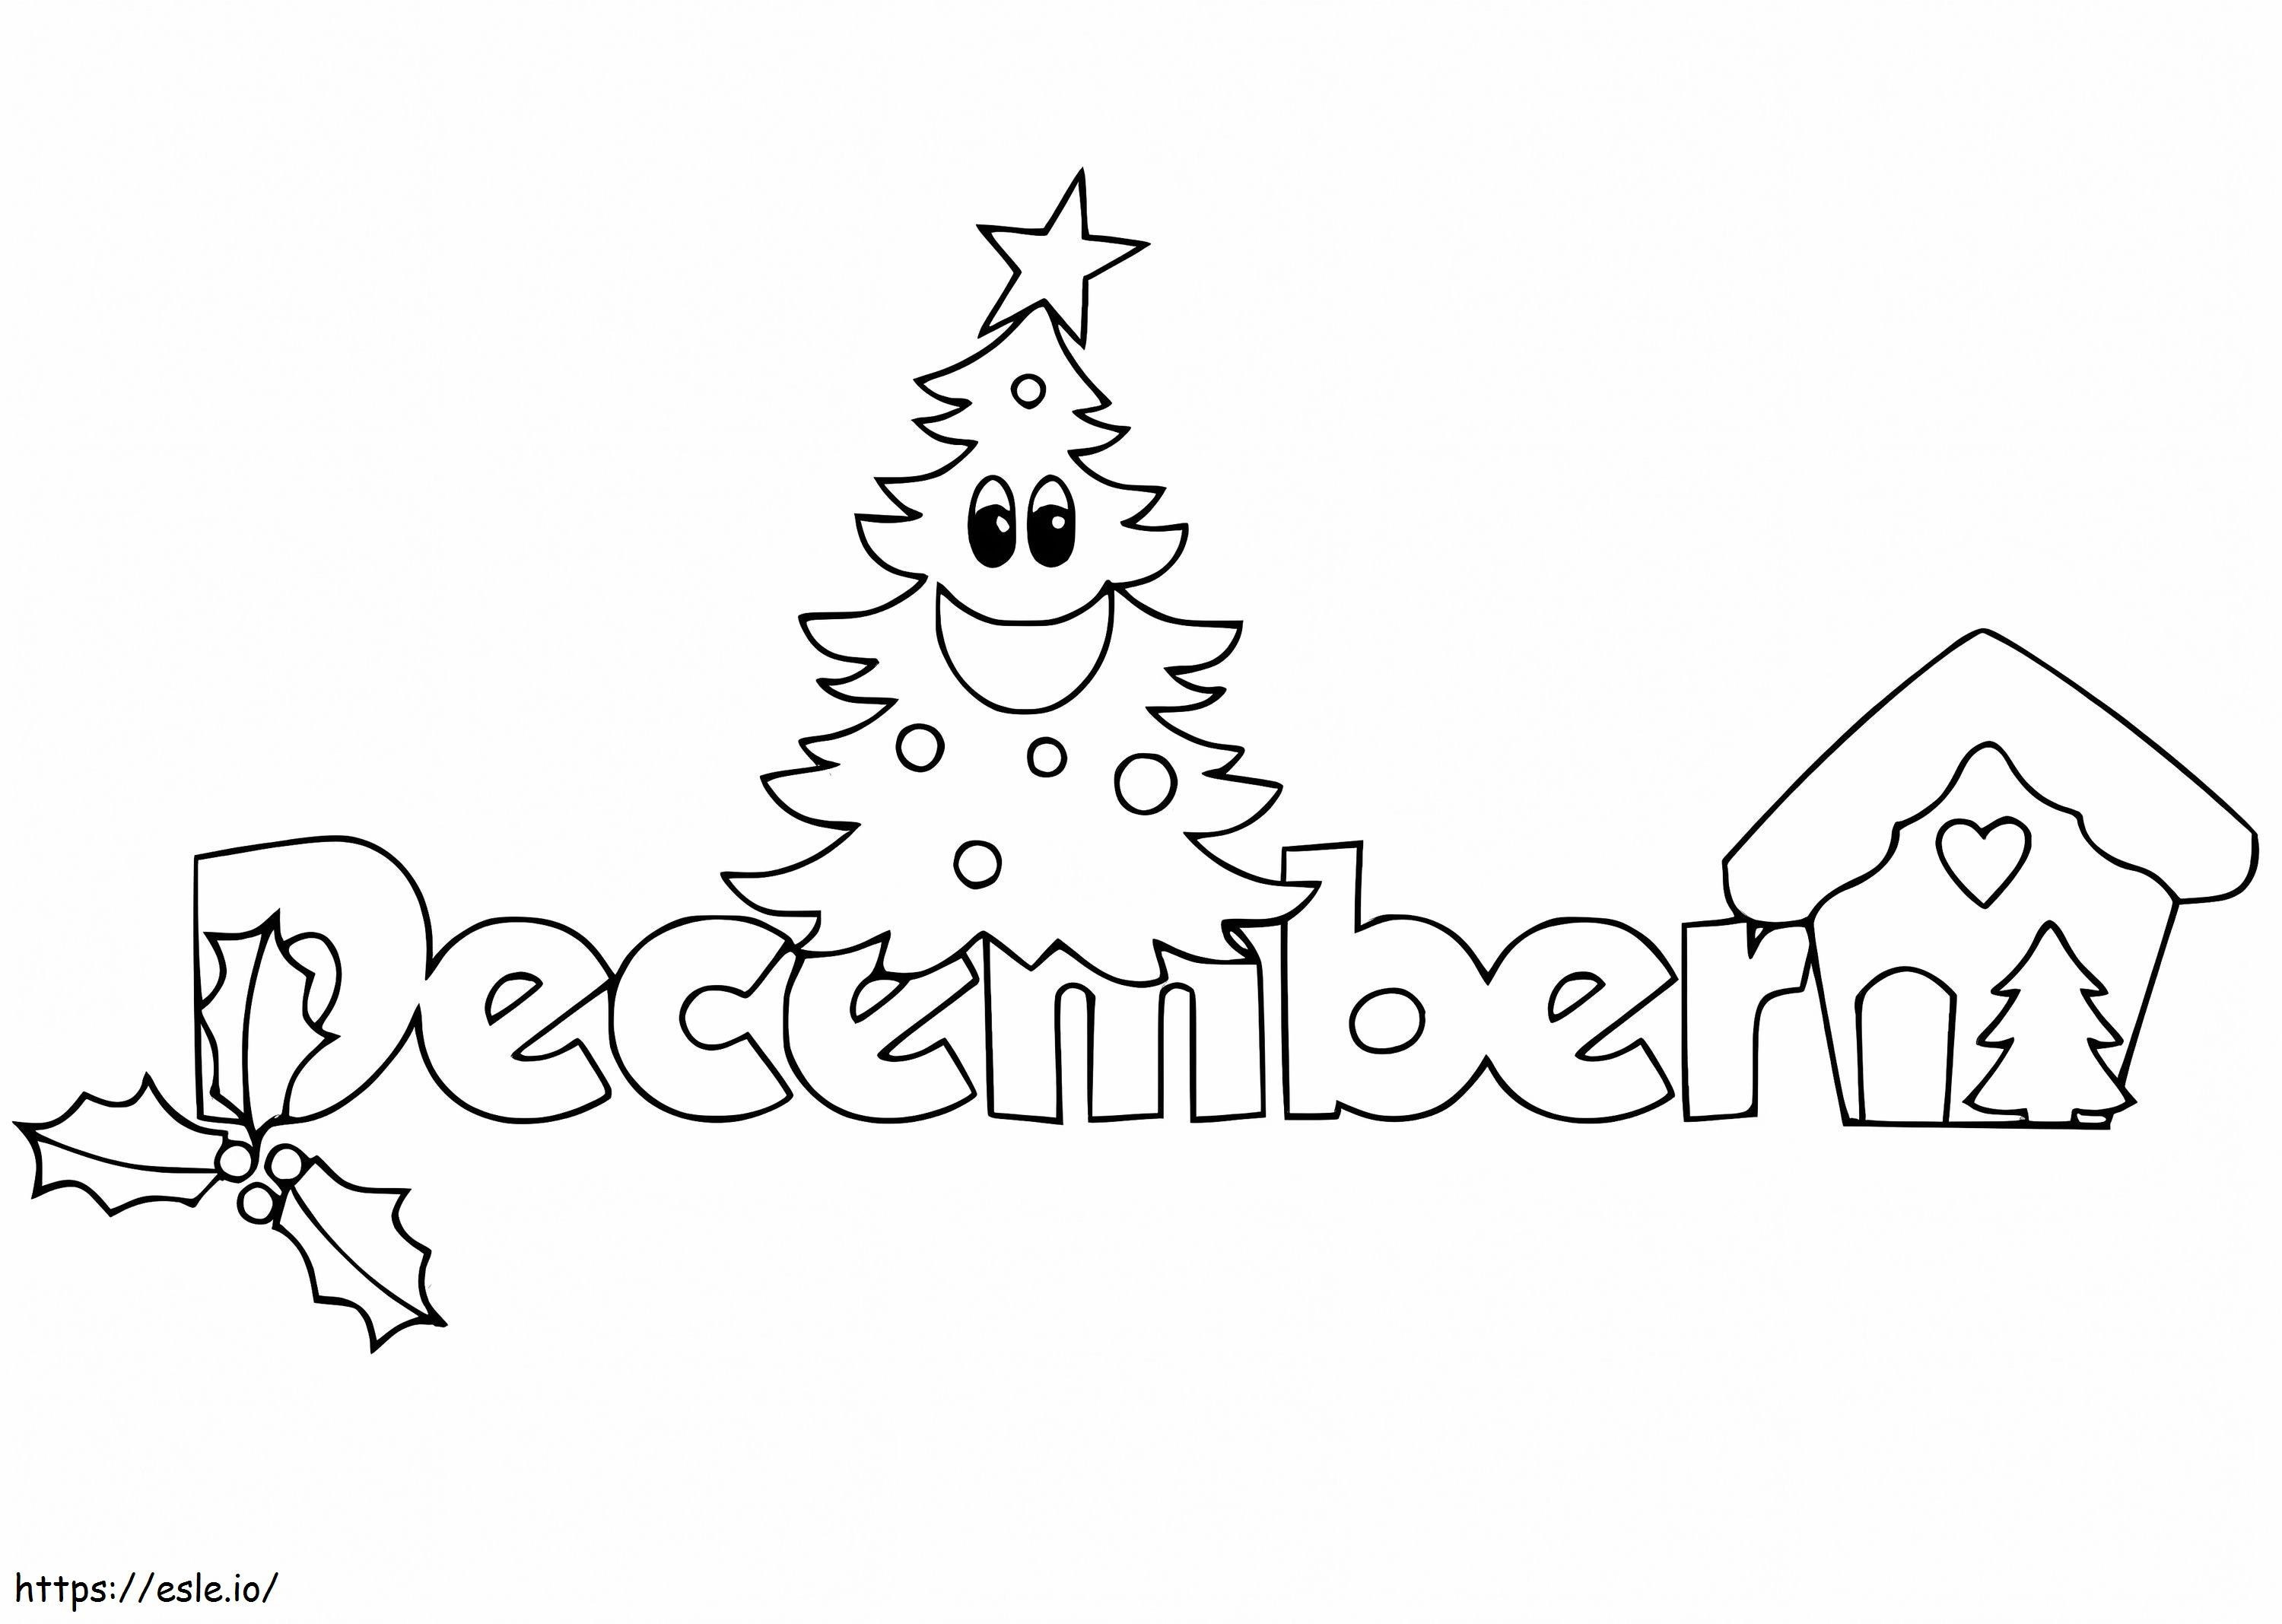 Dezember mit Weihnachtsbaum ausmalbilder